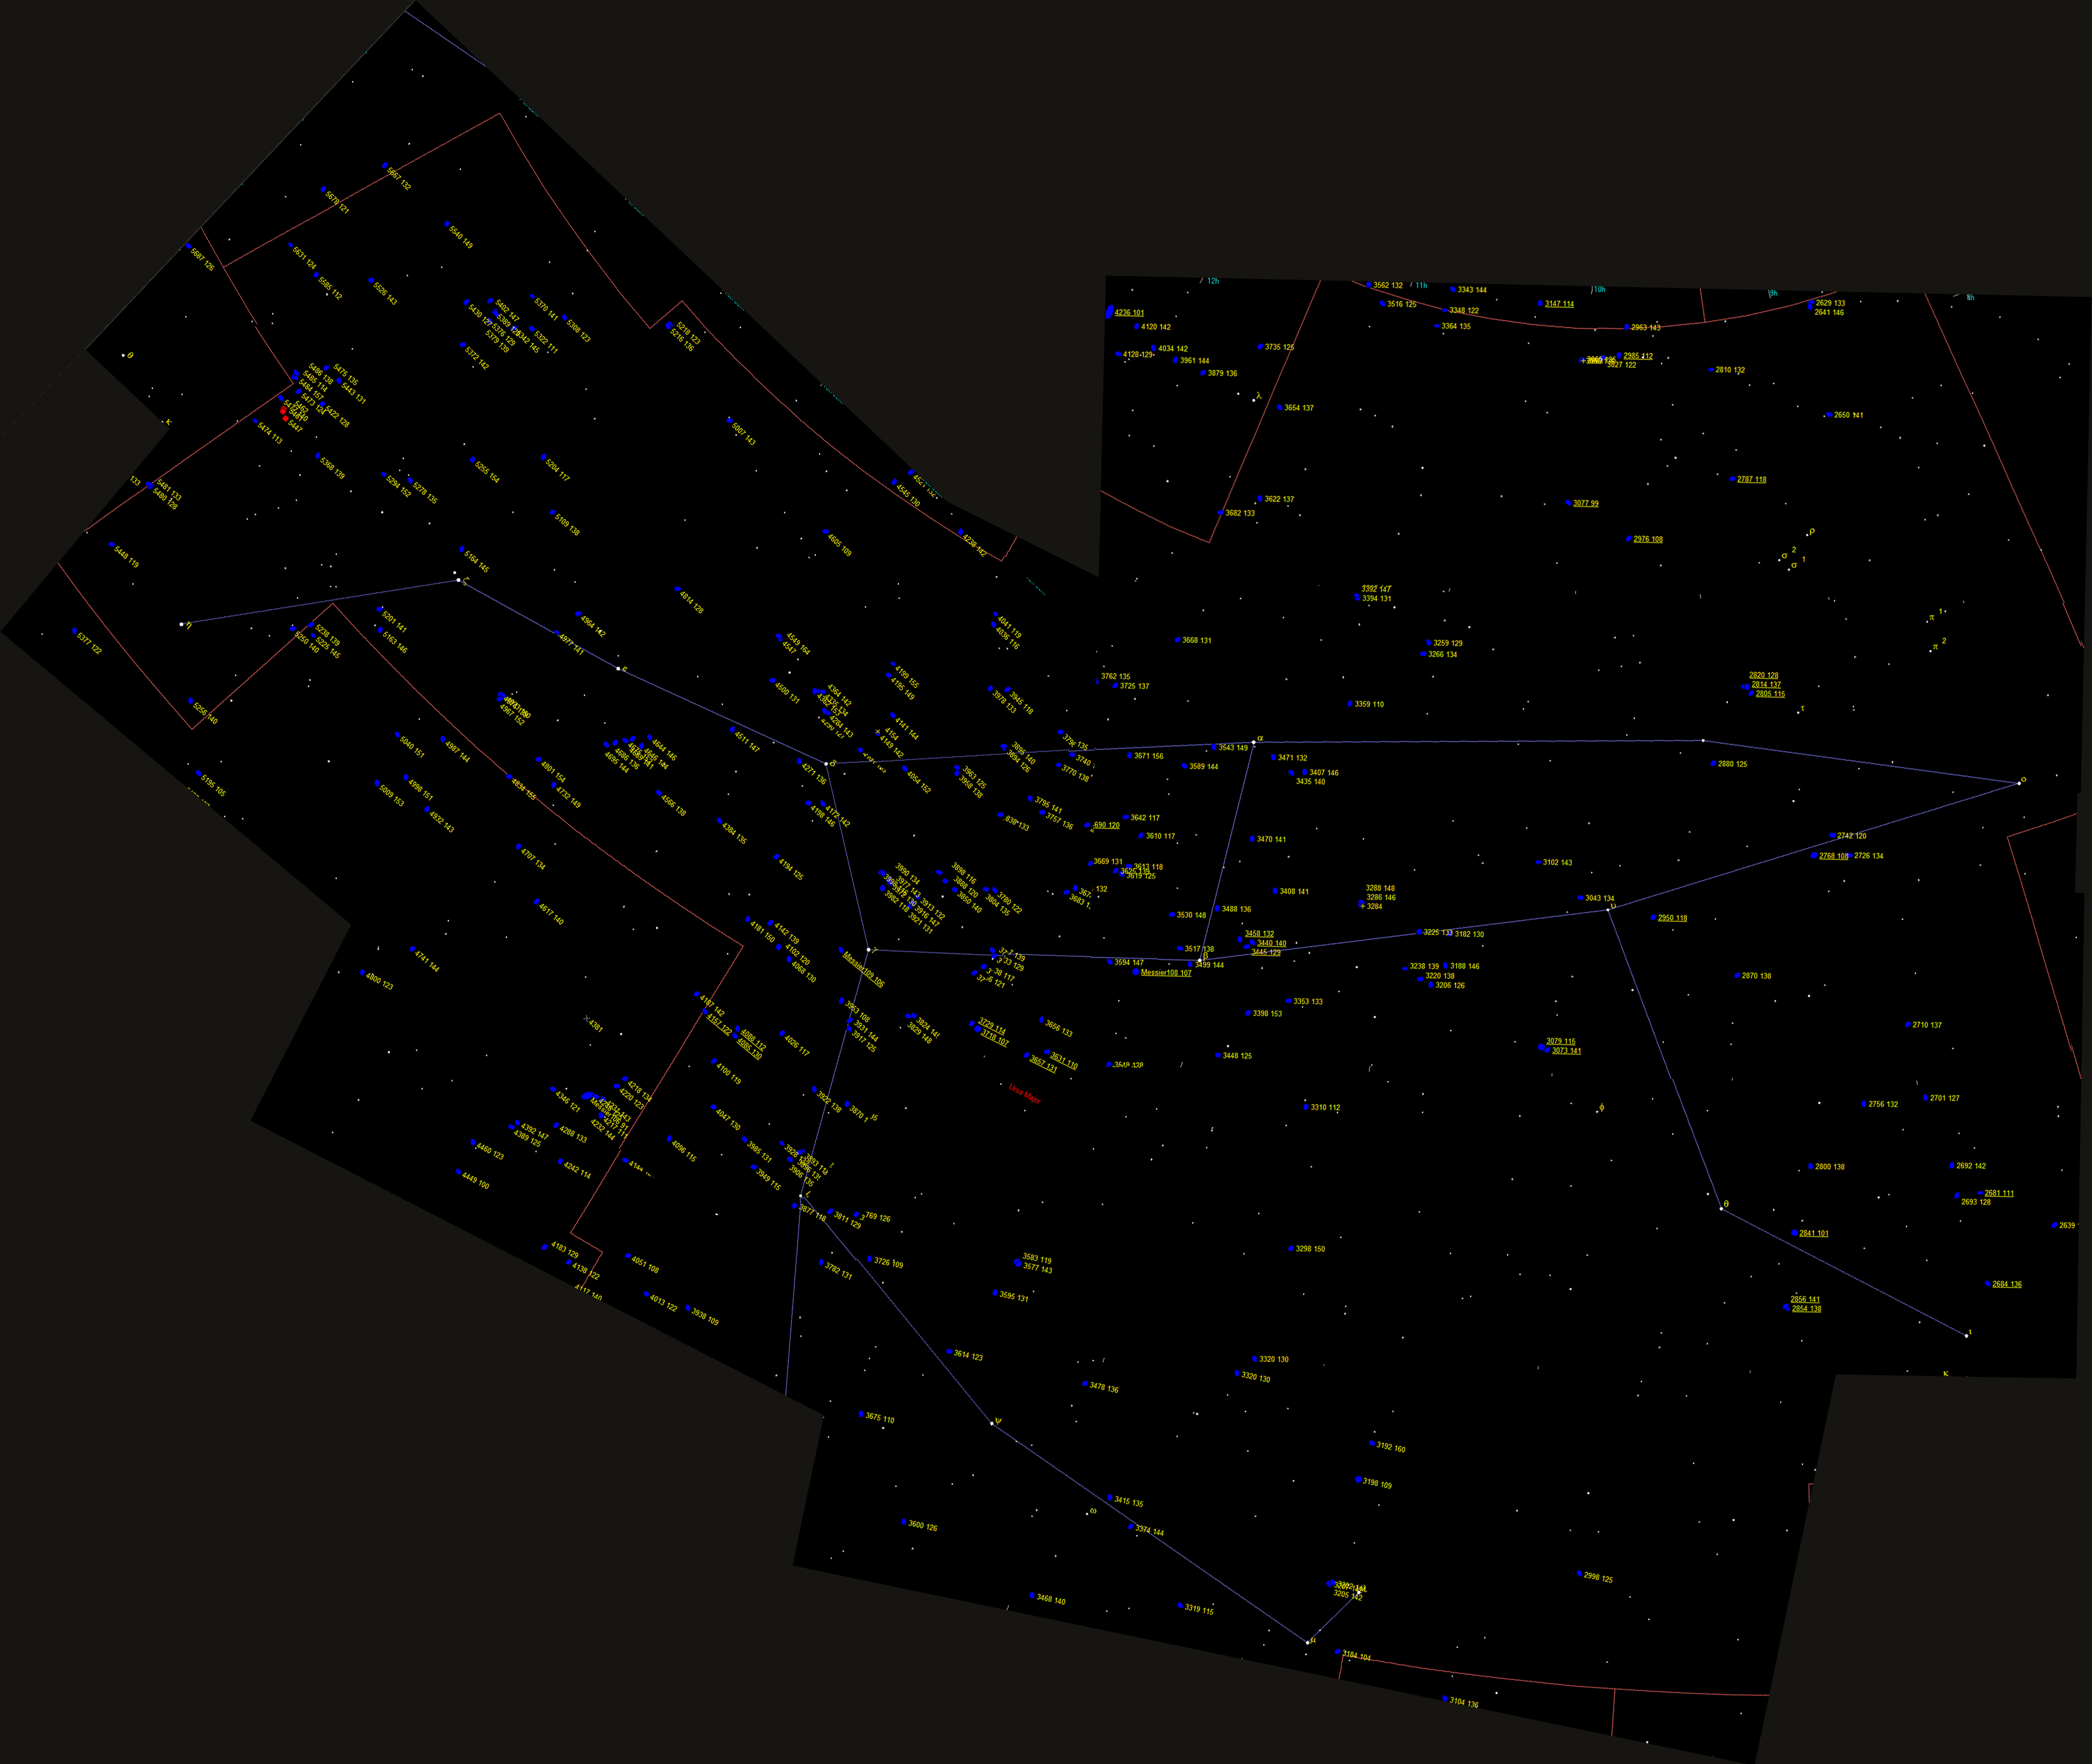 Oggetti di Herschel 2500 nella costellazione Ursa Maior